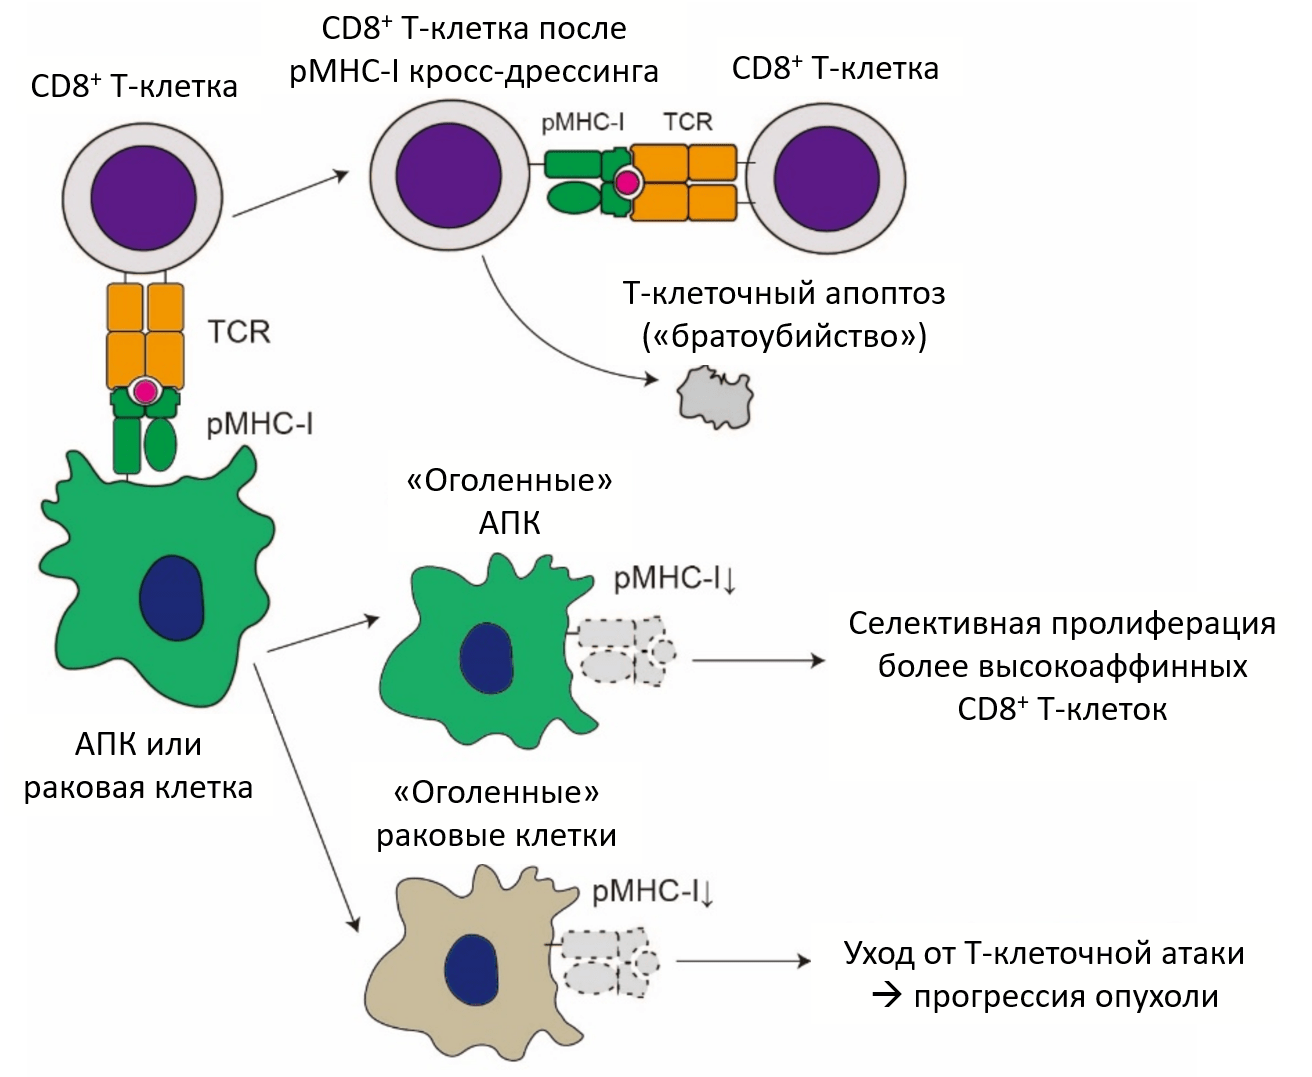 Последствия трогоцитоза для CD8+ субпопуляции Т-лимфоцитов